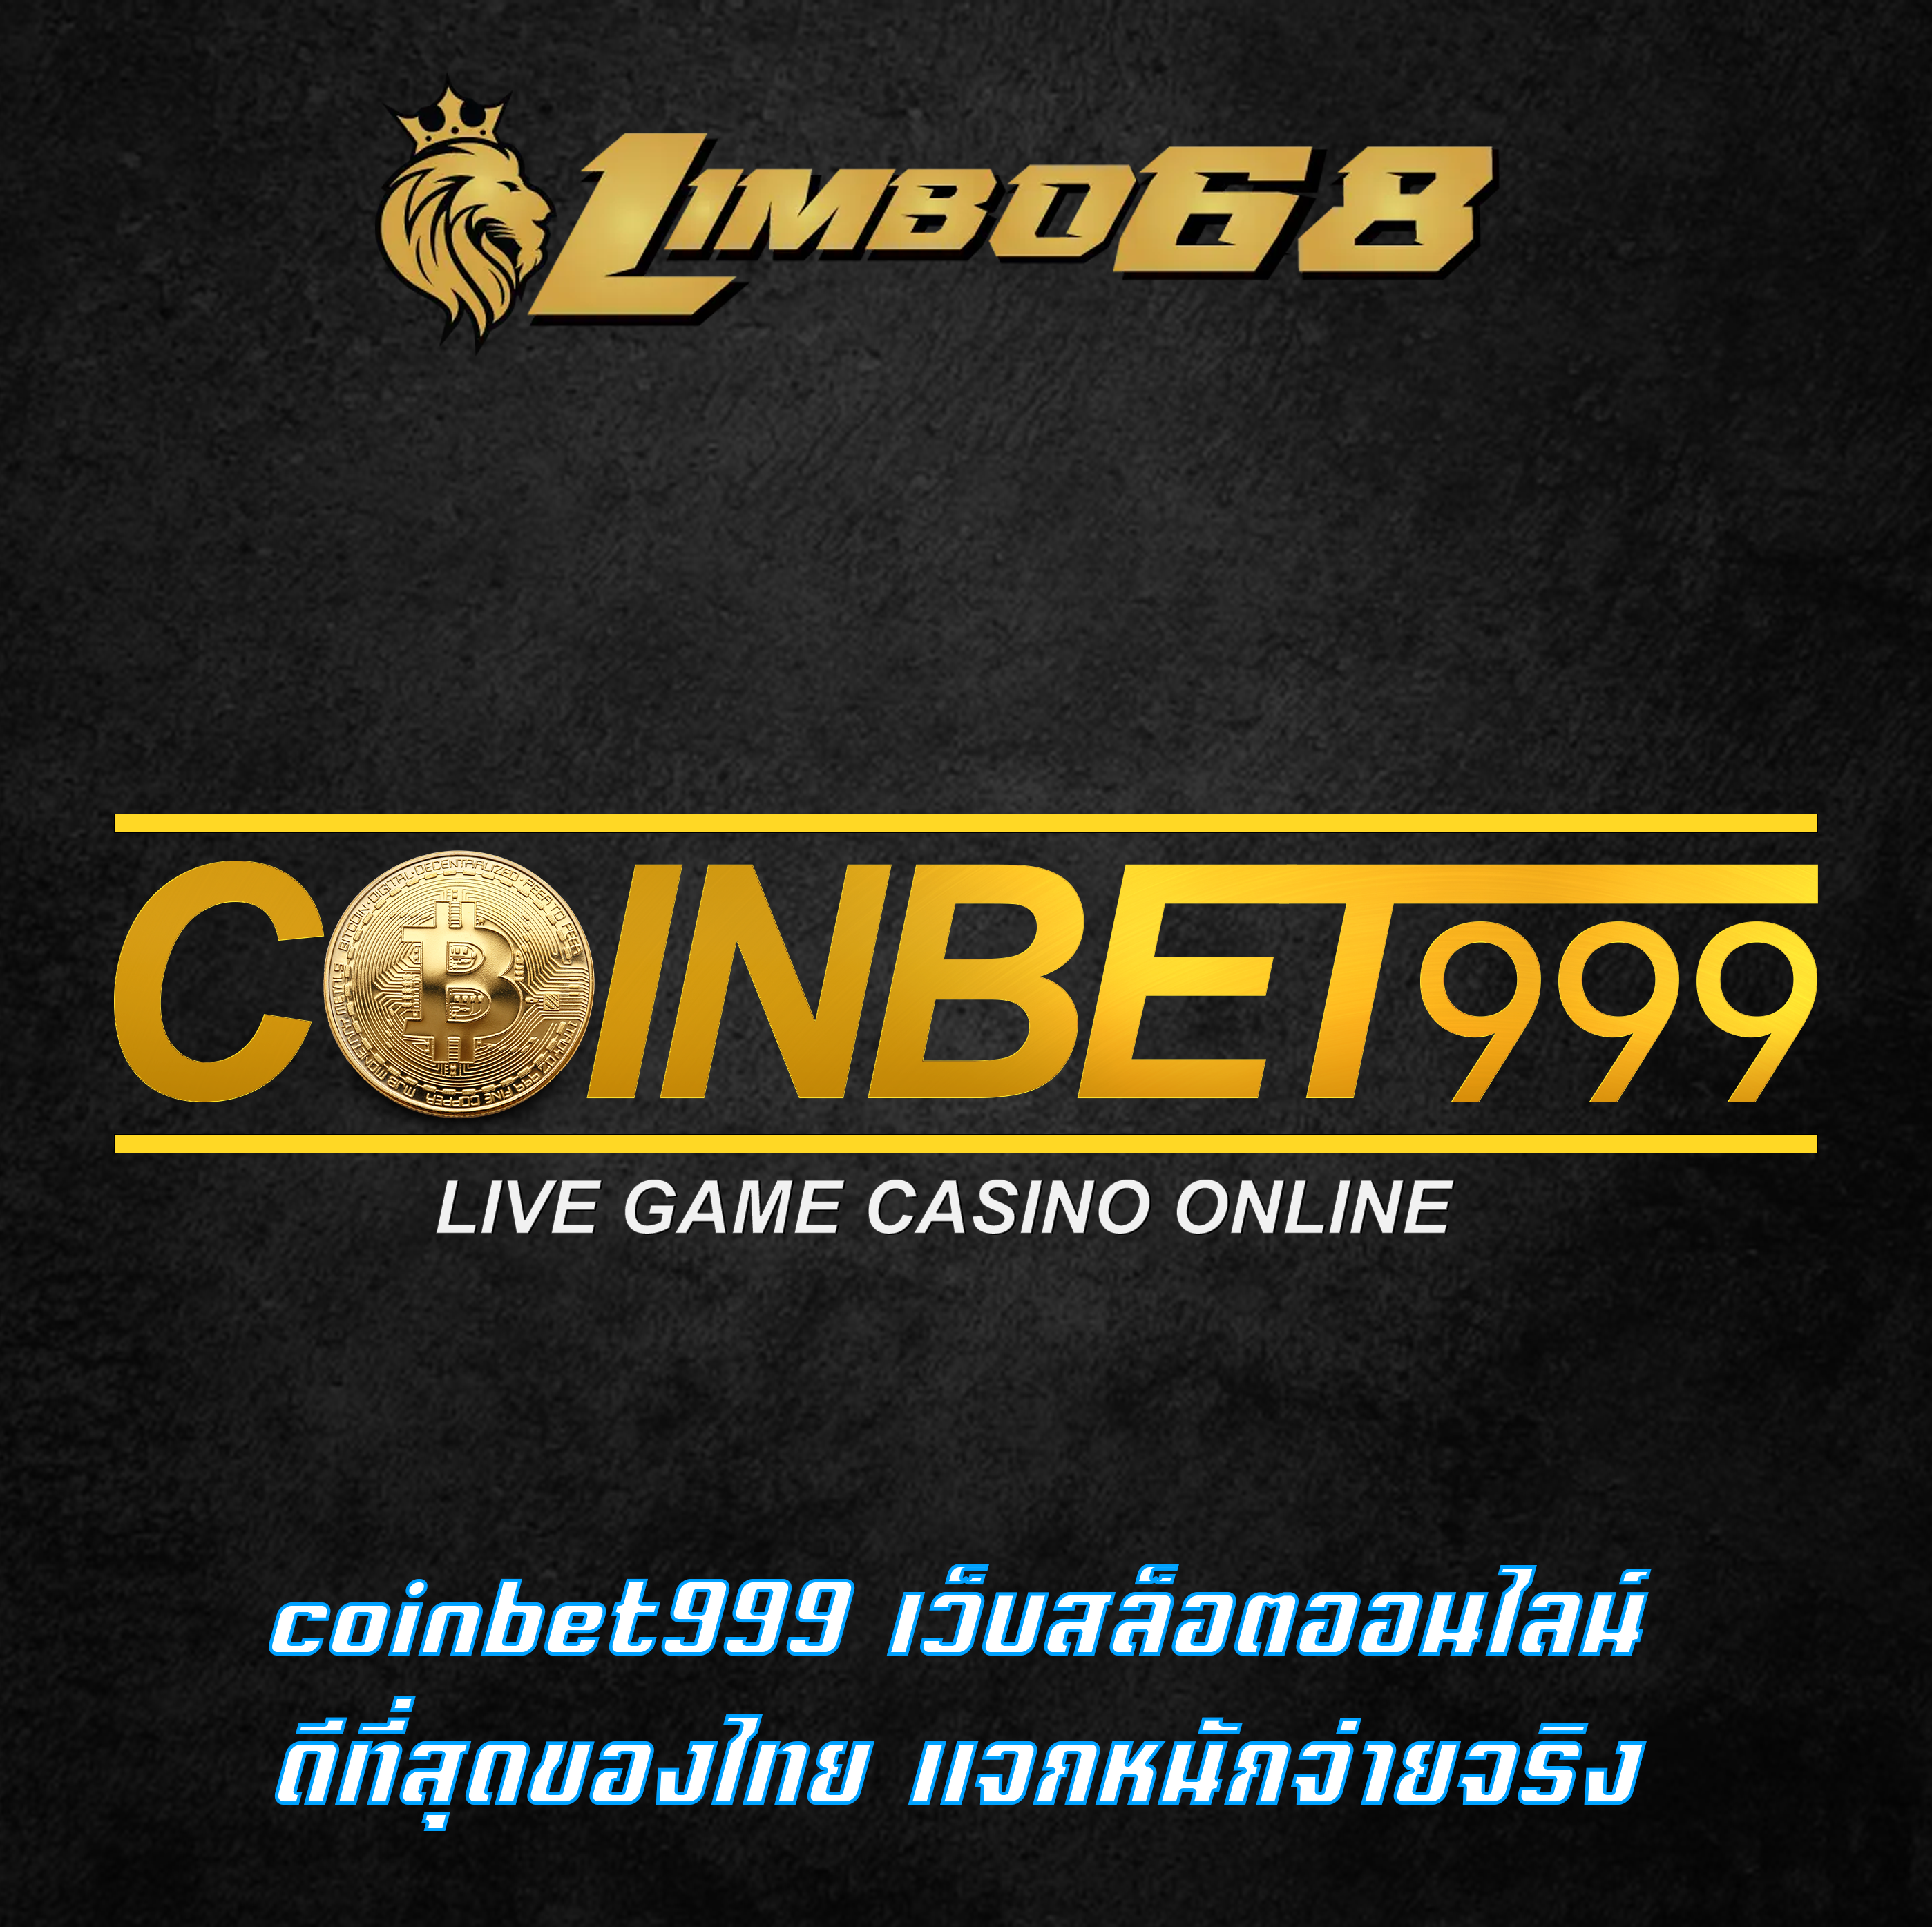 coinbet999 เว็บสล็อตออนไลน์ ดีที่สุดของไทย แจกหนักจ่ายจริง